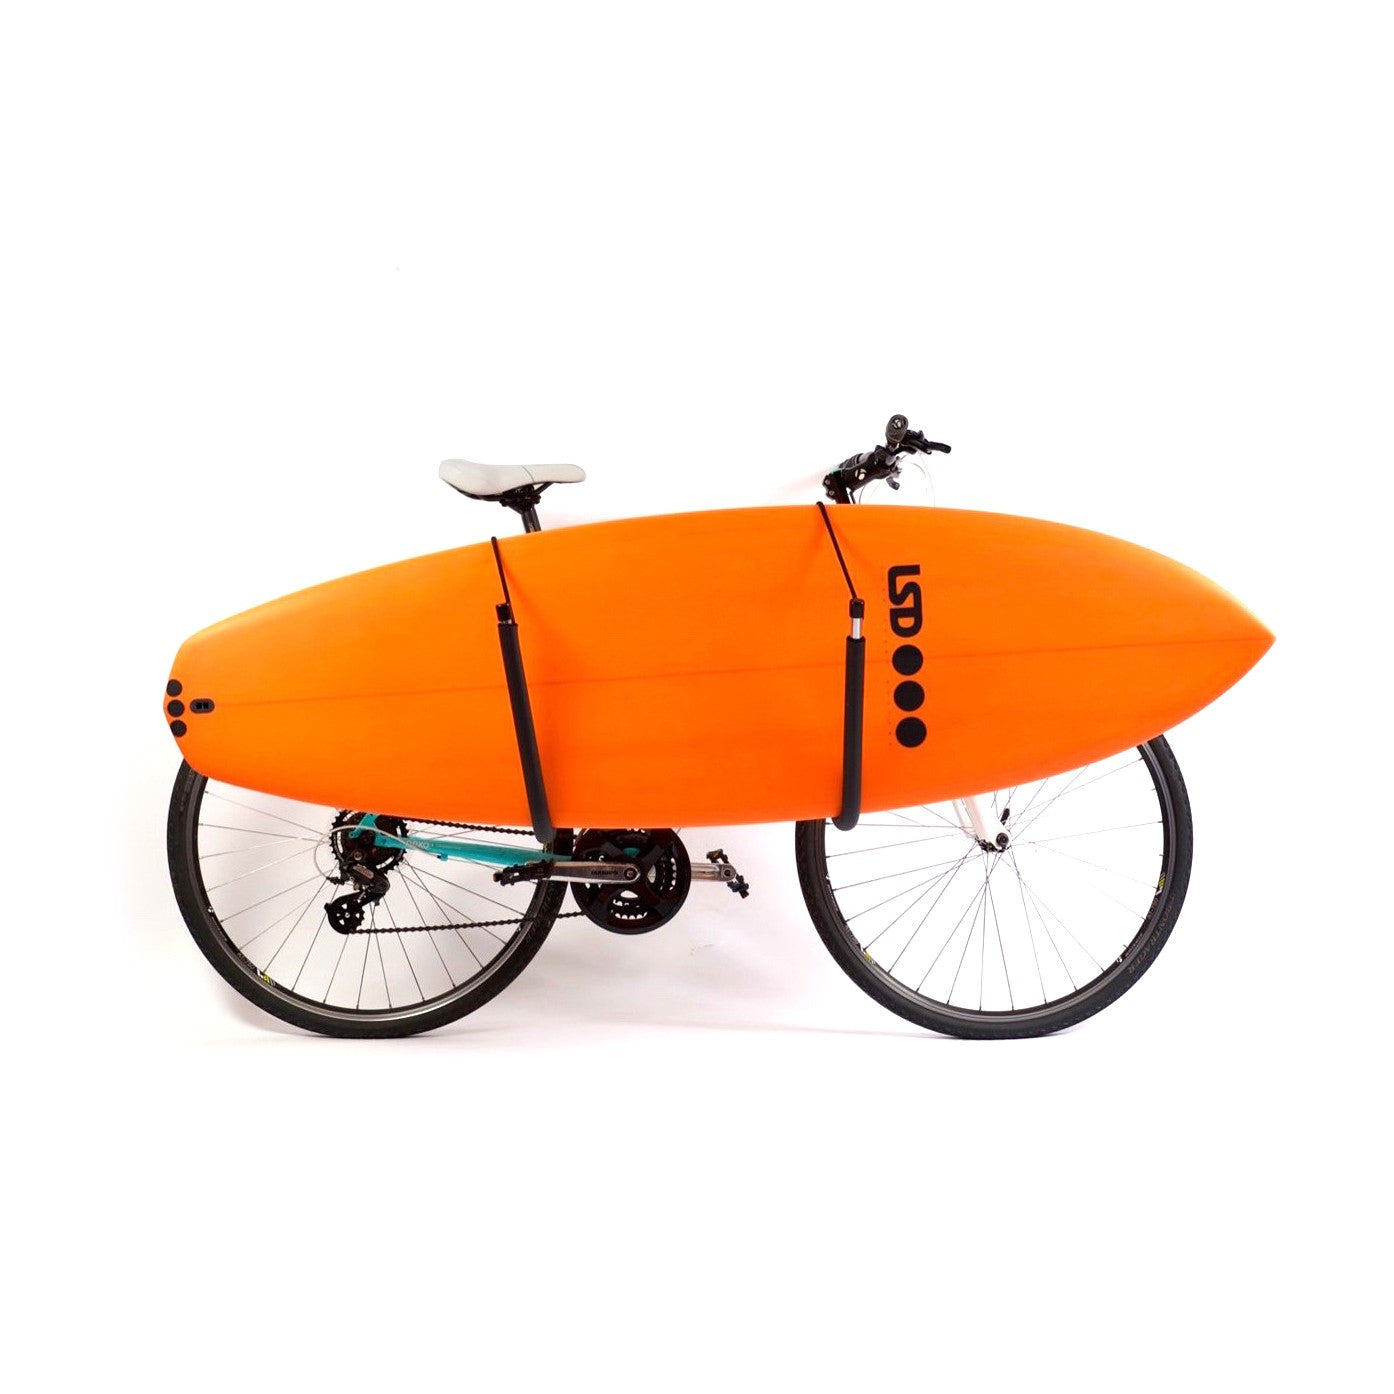 SURF SYSTEM - Racks Surf Vélo (shortboards, longboards et petits SUP)